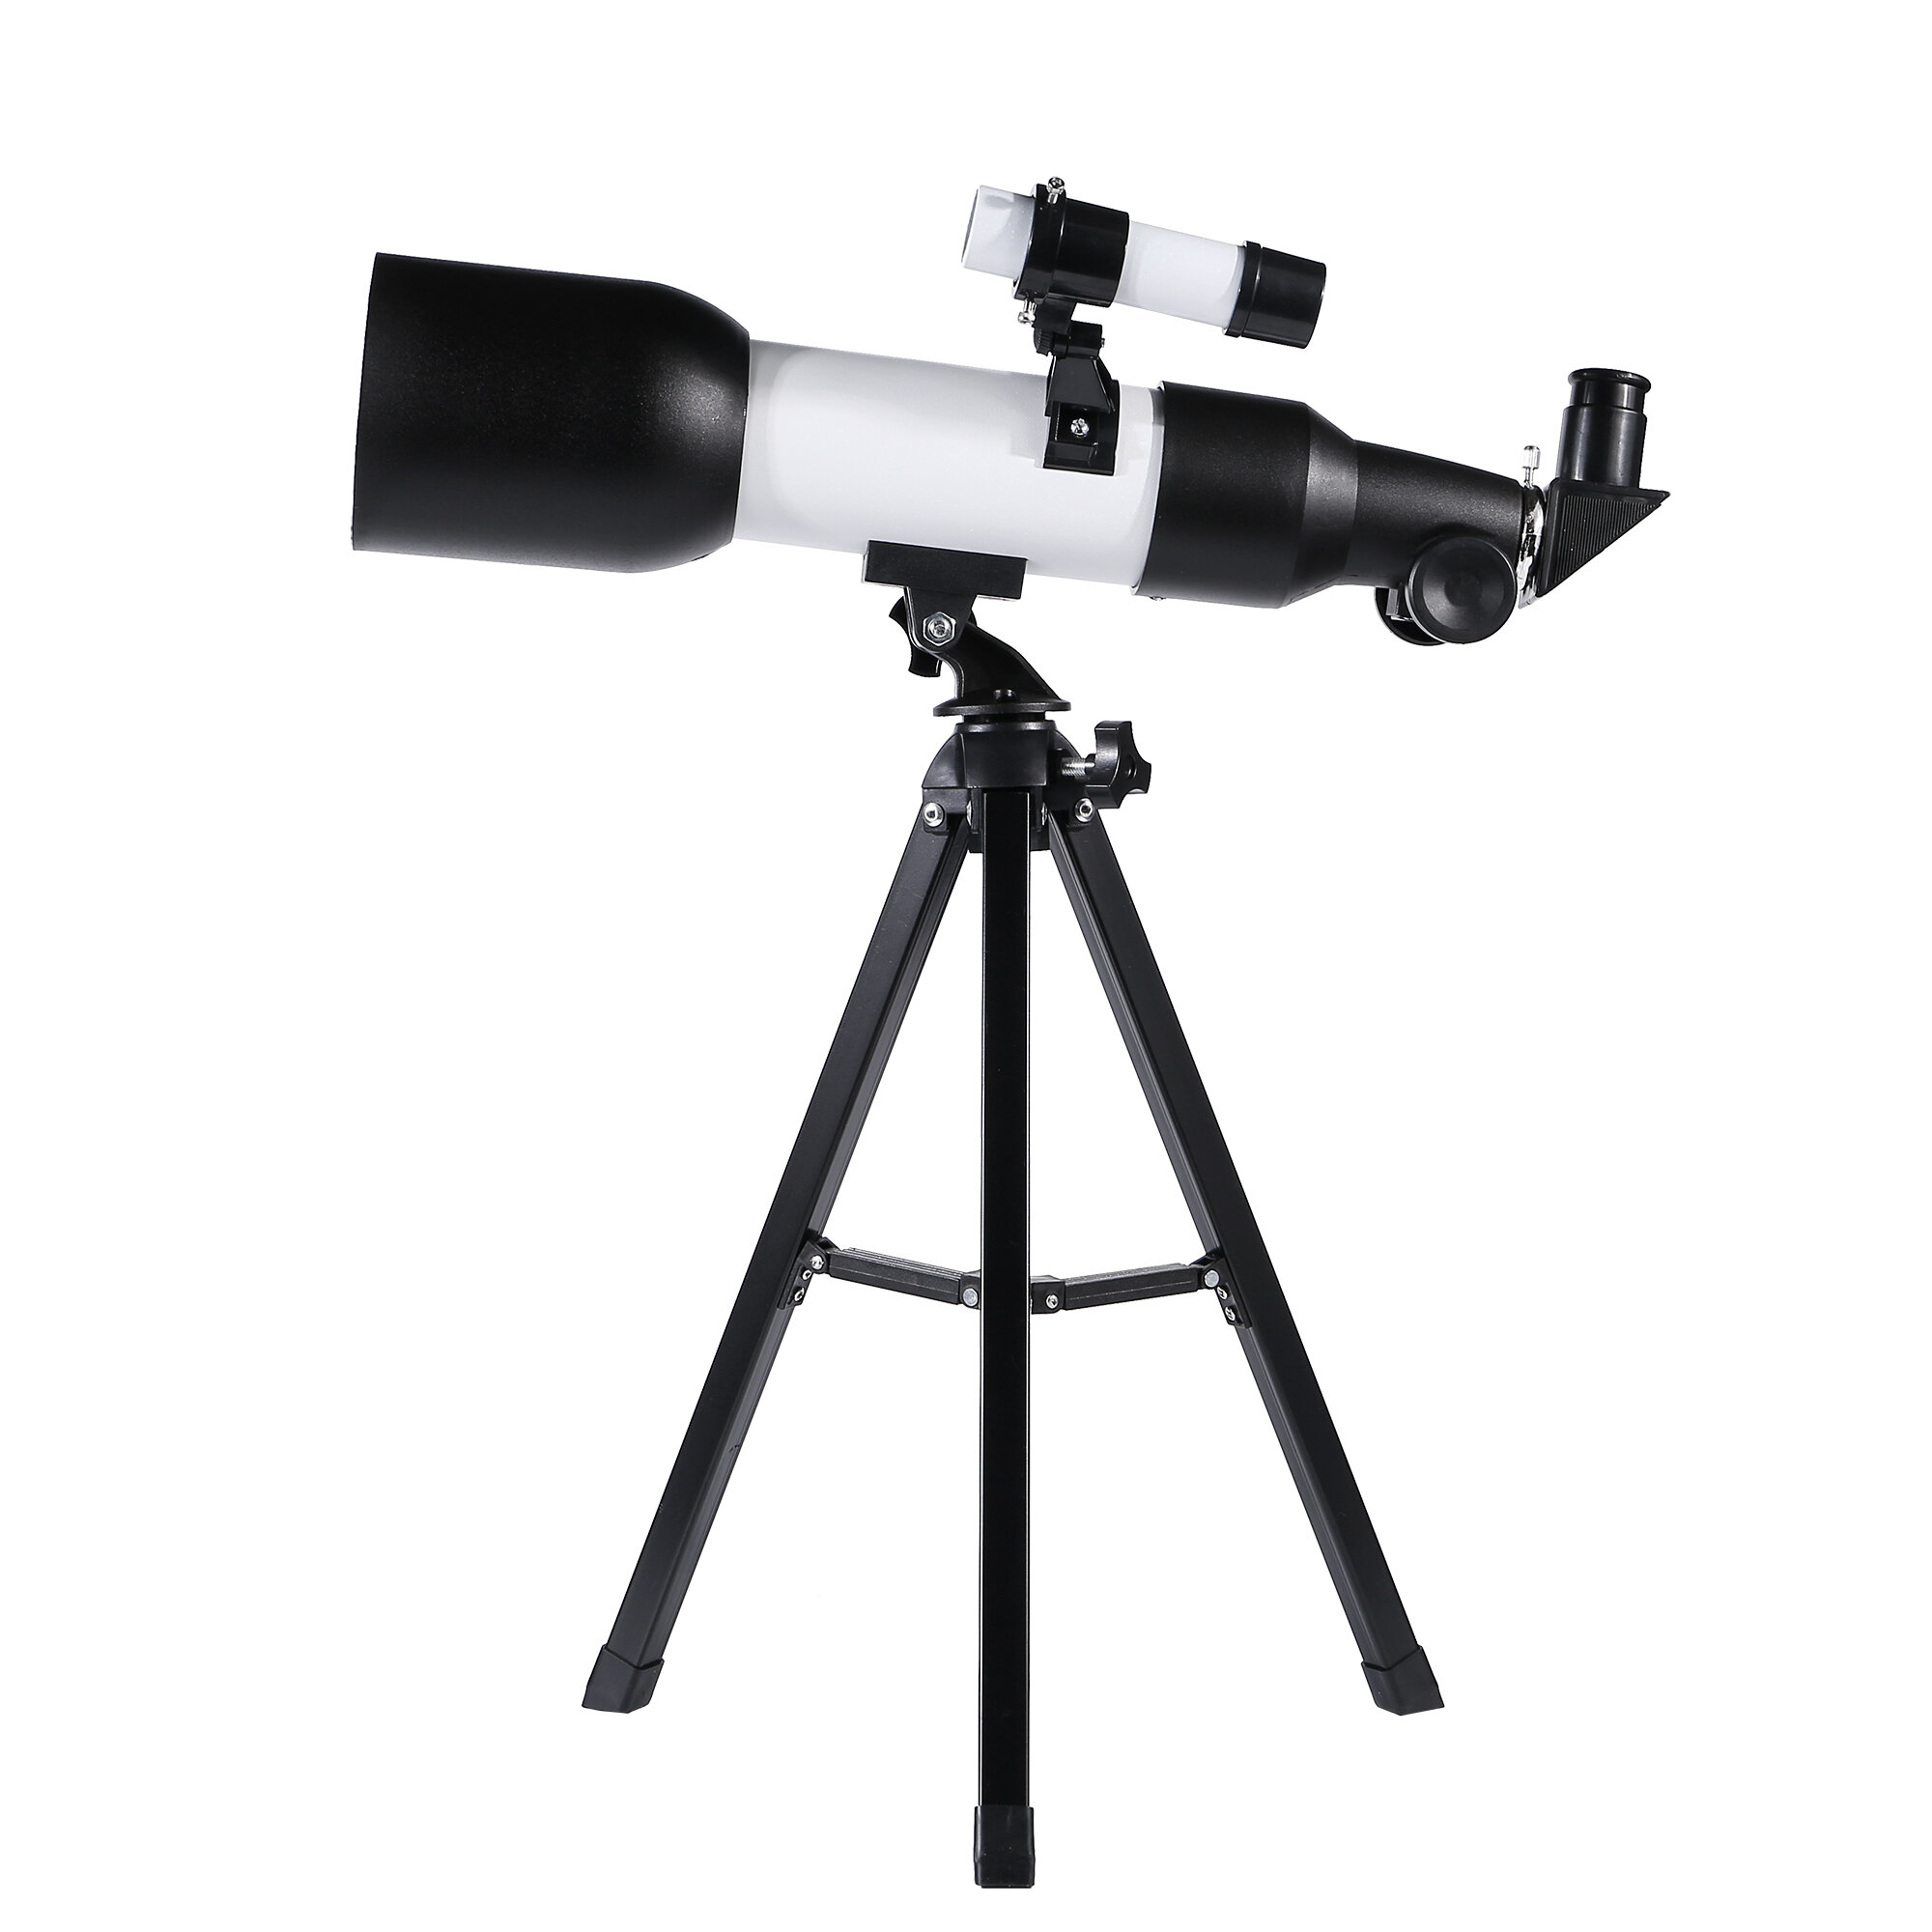 Télescope astronomique professionnel HD Eyebre 120x pour enfants avec vision nocturne à faible luminosité et trépied pour observer l'espace profond.